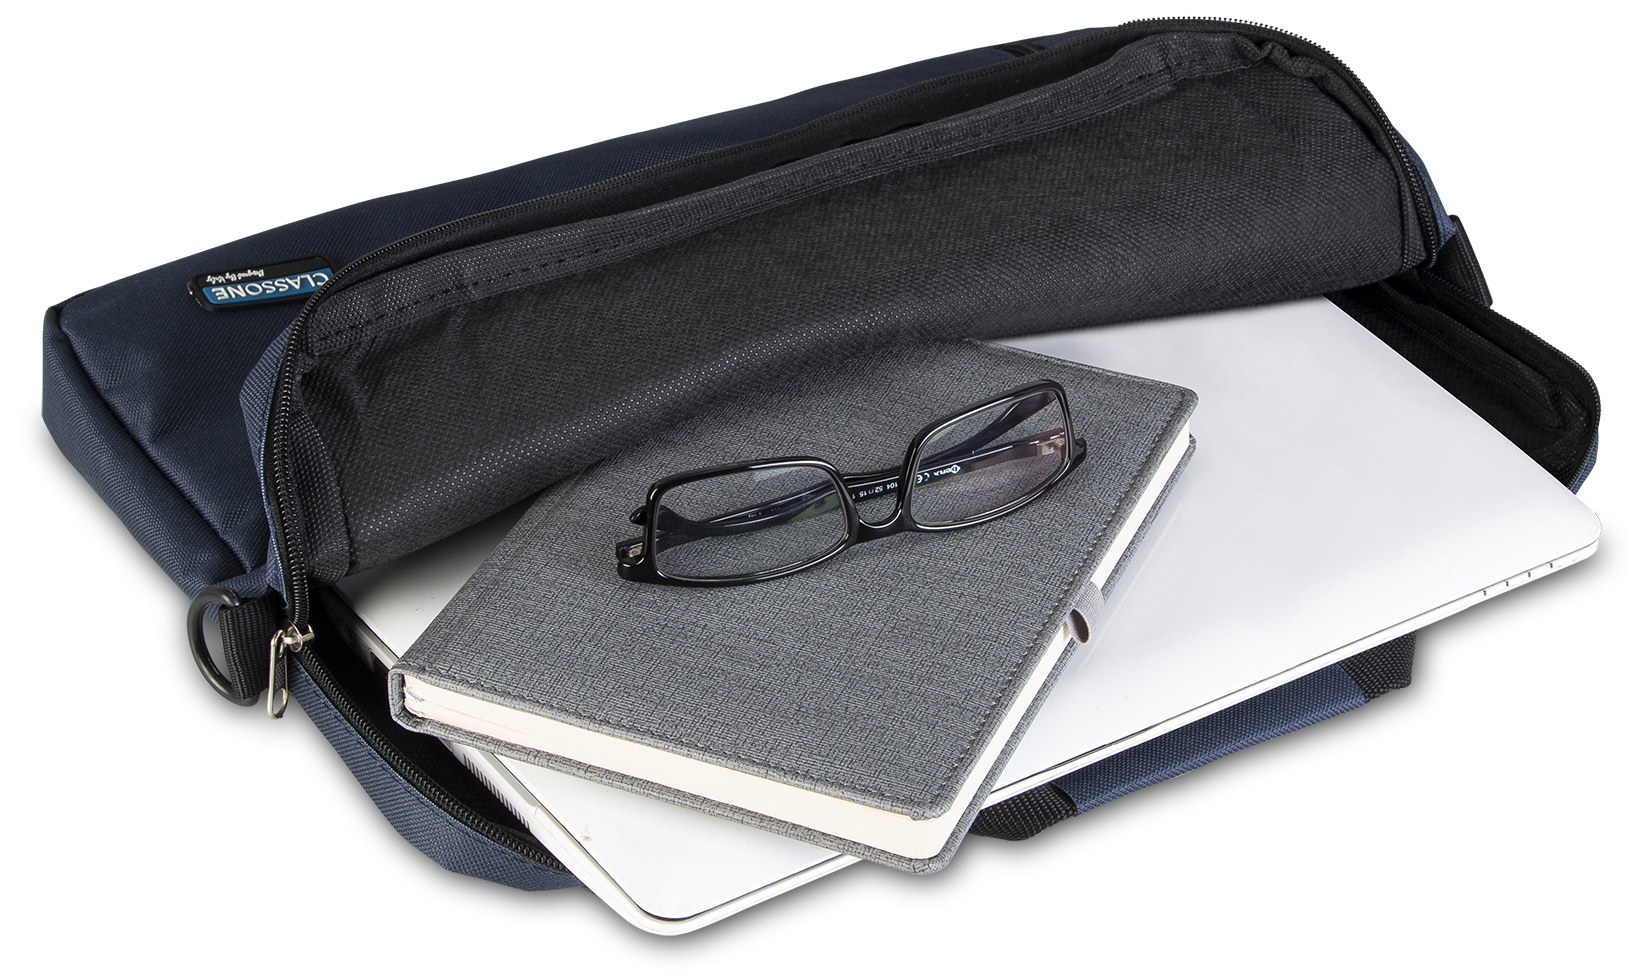 Classone BND201 Eko1 Serisi 15,6 inch Notebook Çantası / Lacivert